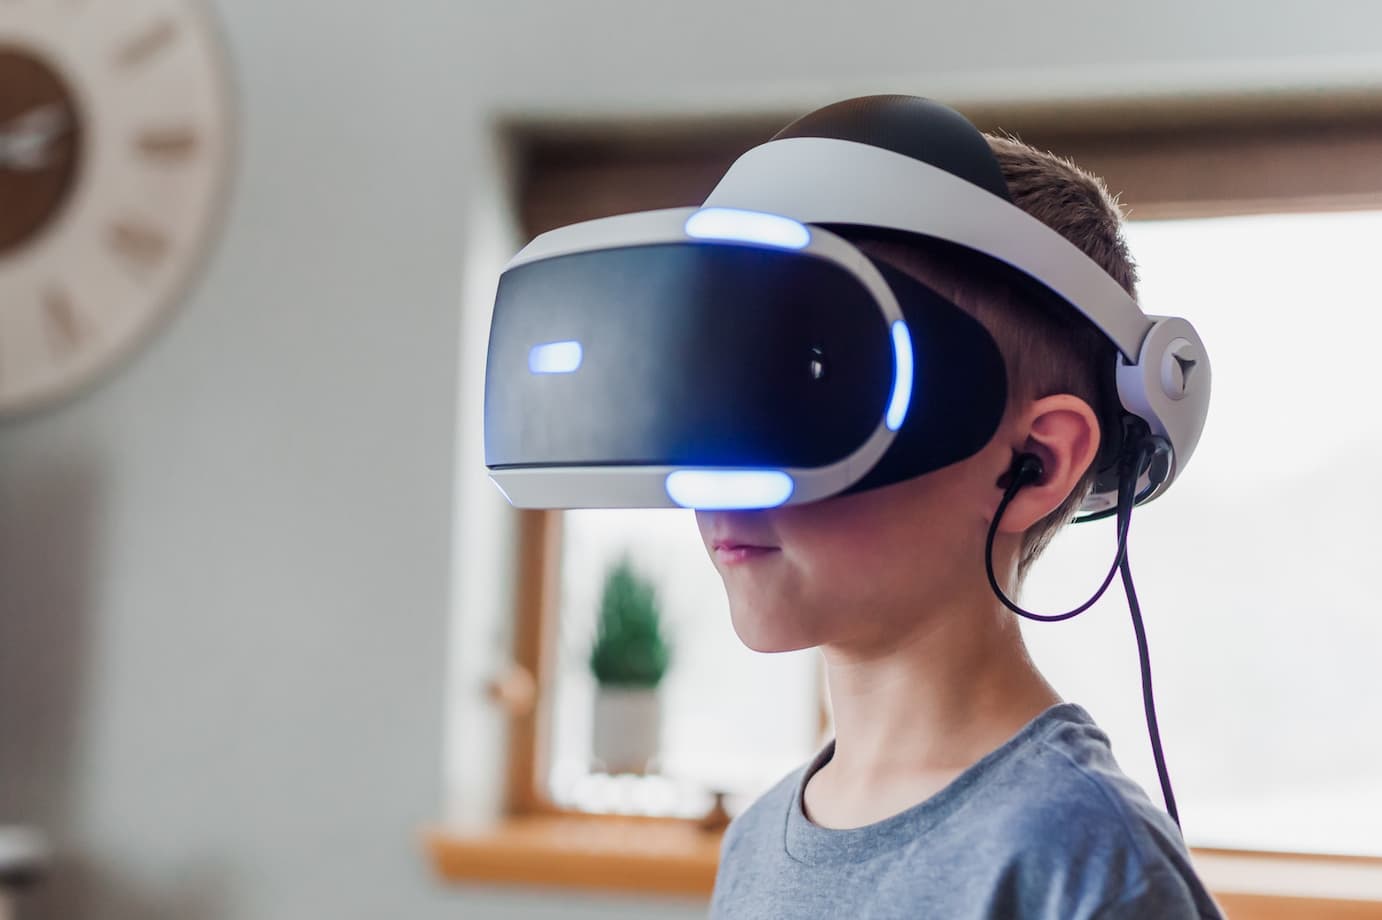 Os 15 Melhores Jogos de Anime VR Para Oculus Quest  Anime, Jogo de dança,  Jogos de realidade virtual